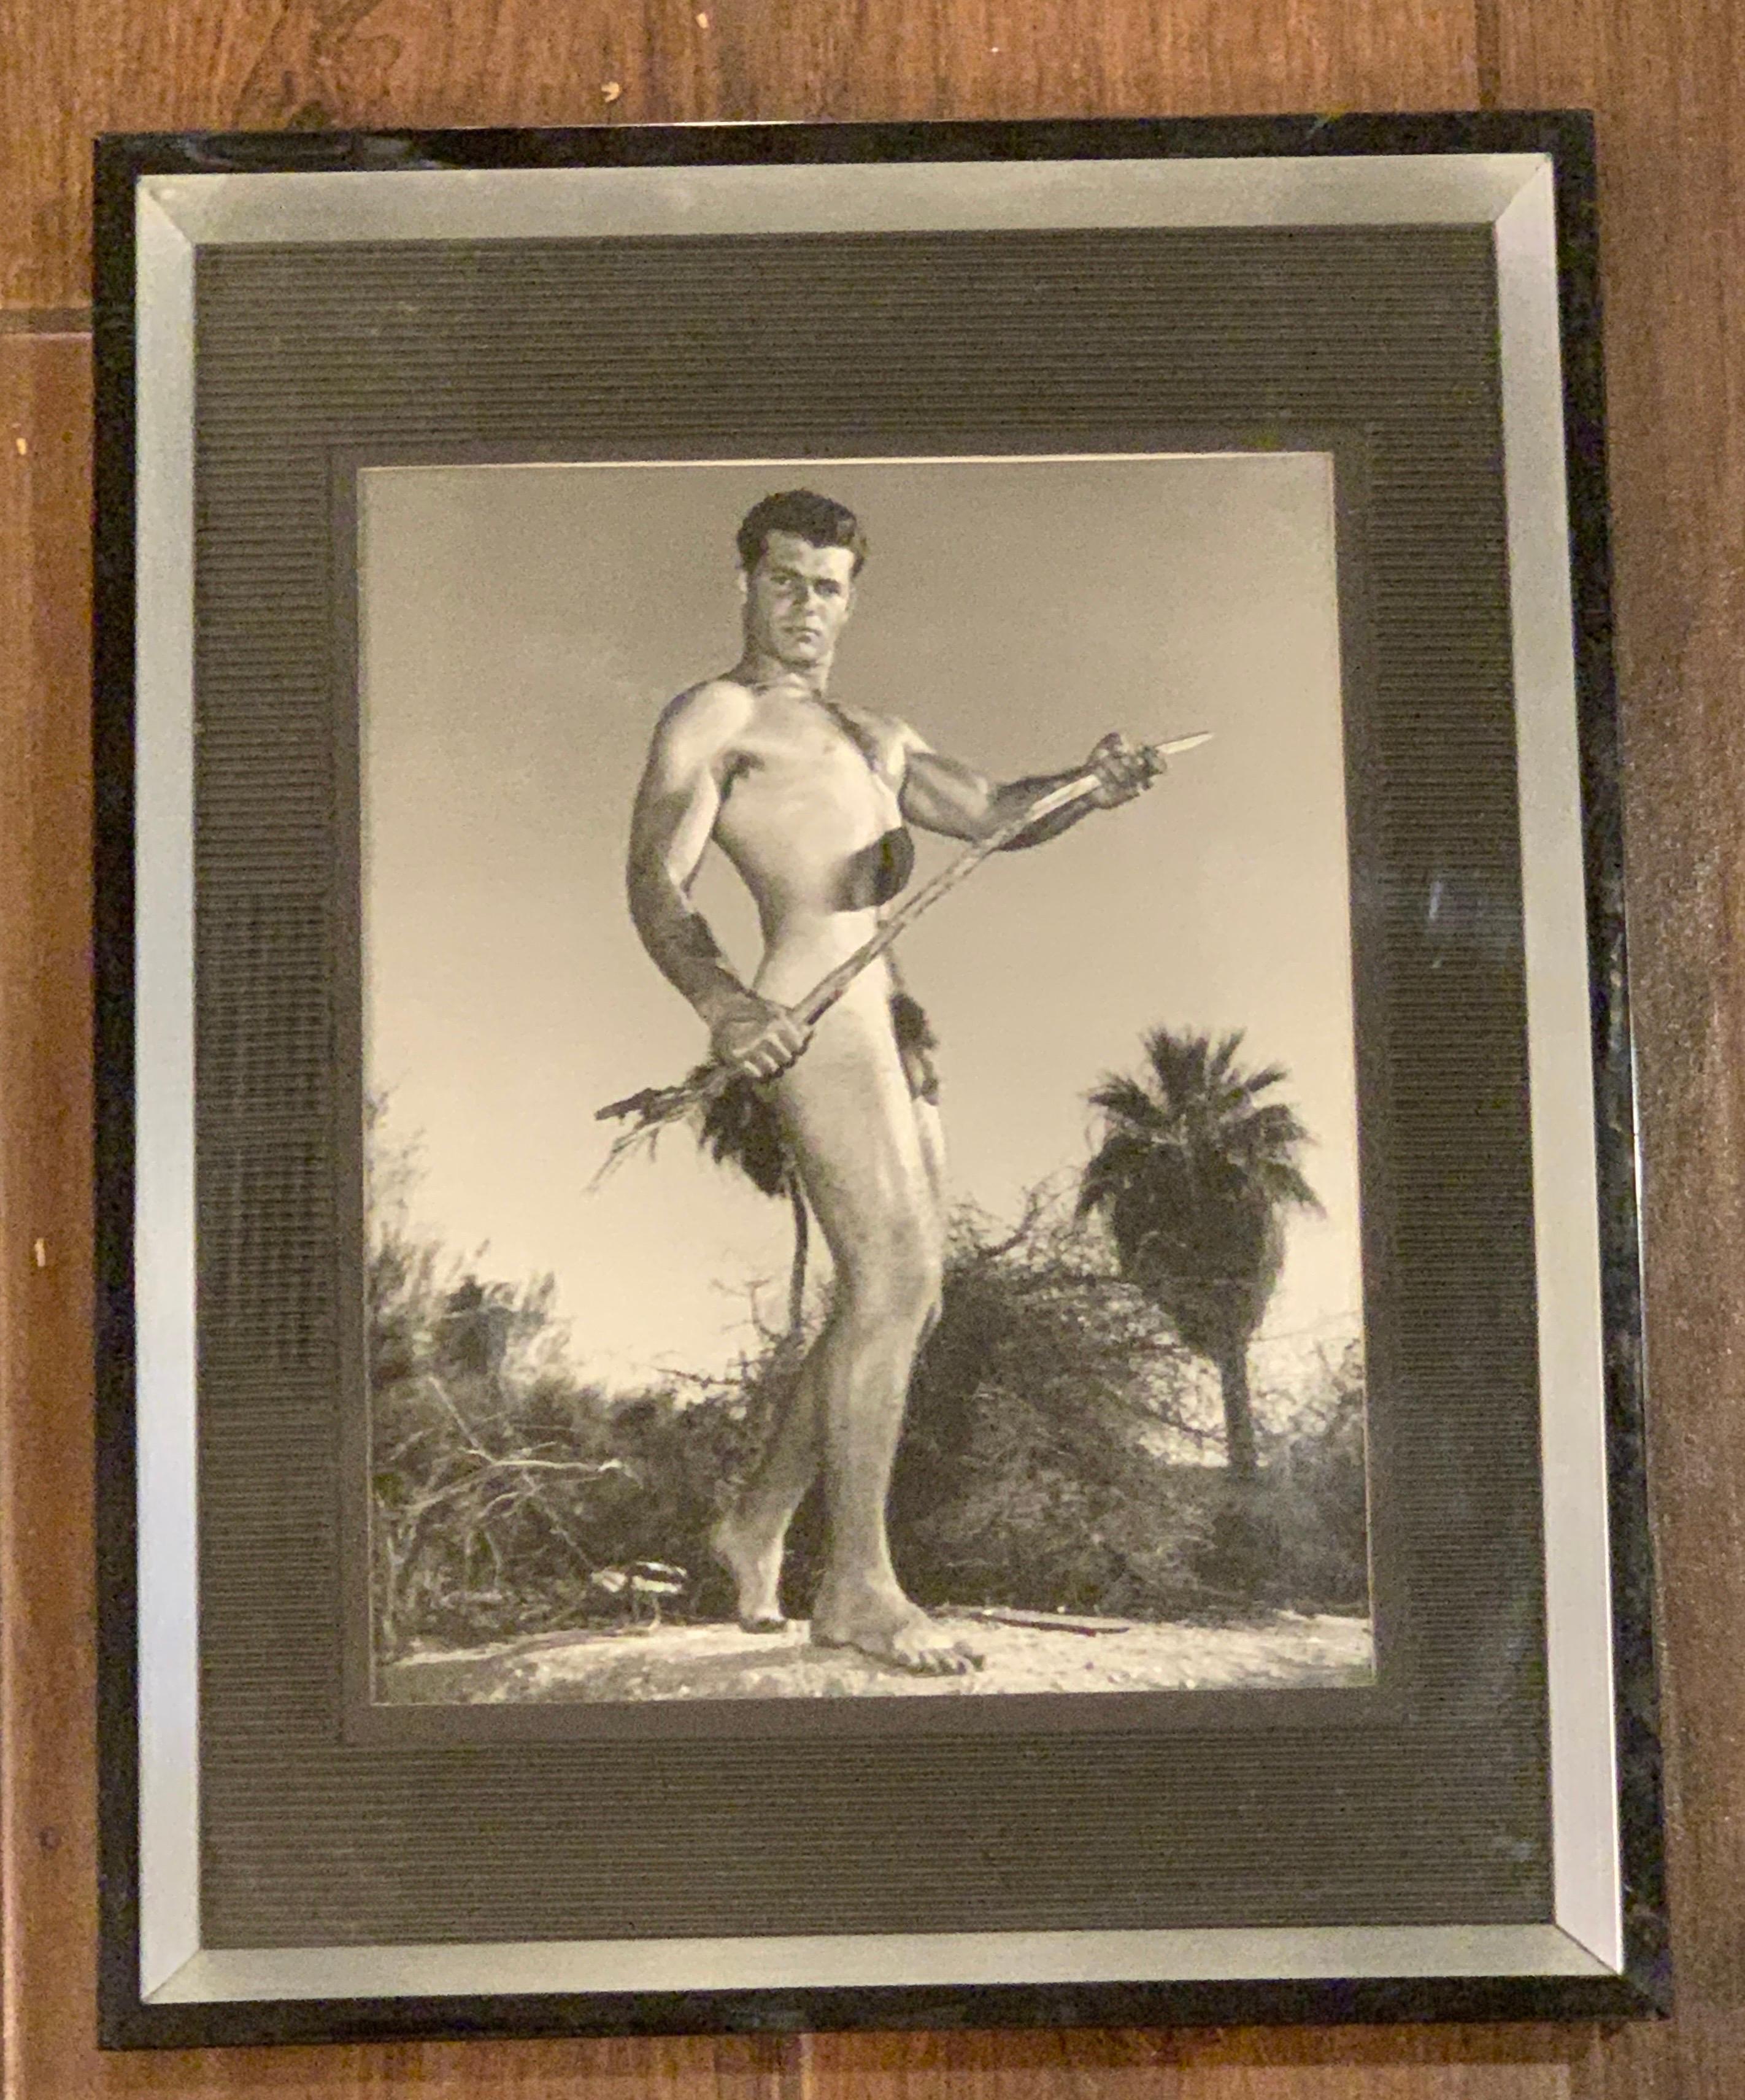 Ein weiteres Original 8 x 10 Schwarz-Weiß-Foto von weltberühmten Fotografen, Bruce Bellas AKA Bruce of L.A. wir haben viele auf 1st Dibs aus unserer persönlichen Sammlung von 40+ Jahren verkauft. Bitte beachten Sie, dass es sich nicht um eine Kopie